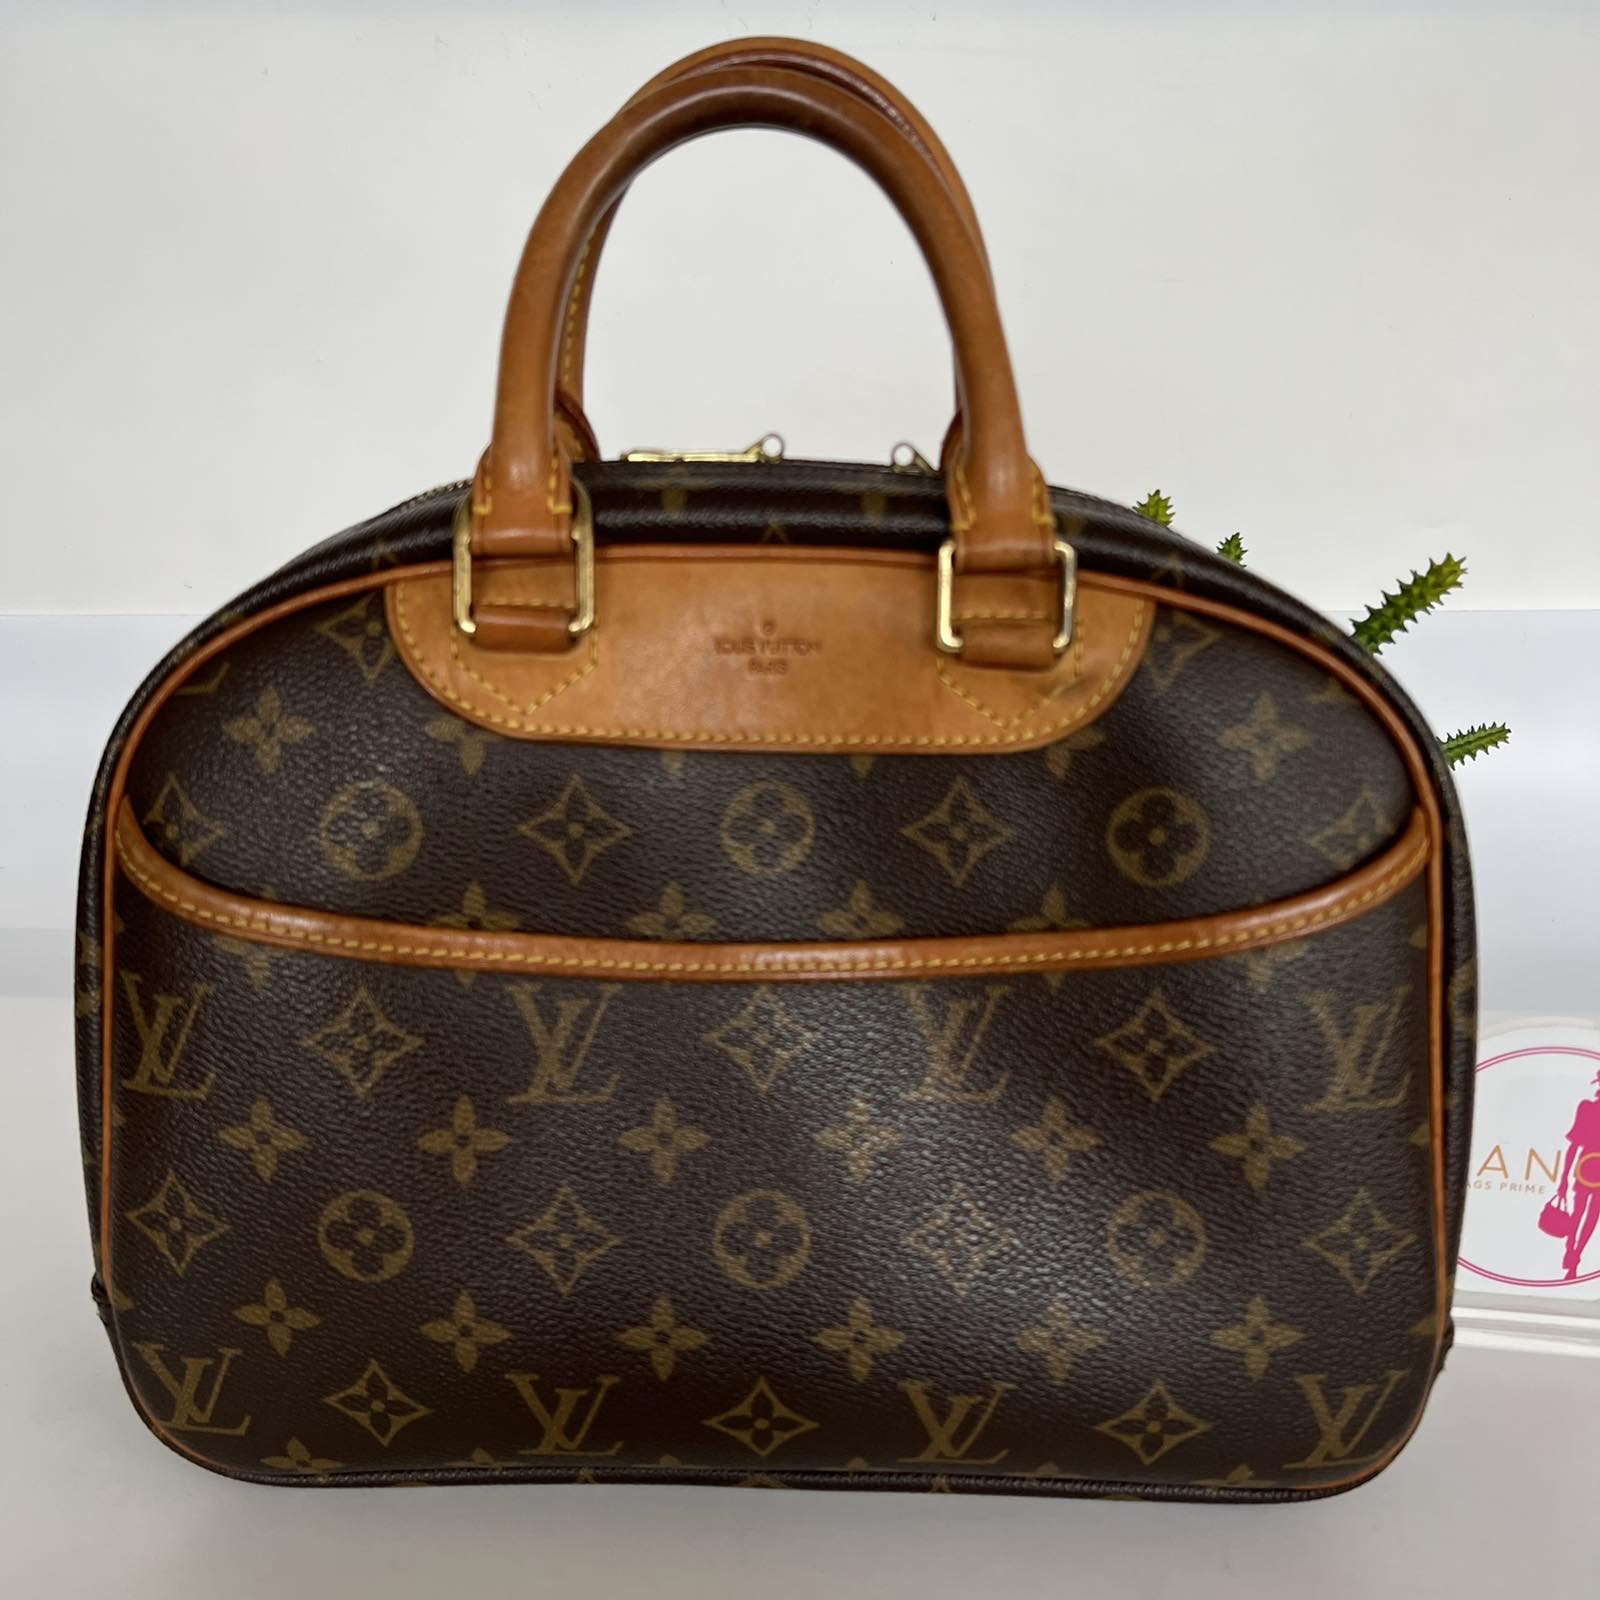 Shop Louis Vuitton MONOGRAM Classic Tilsit top handle handbag office style  M46548 by ChristelleKindregar